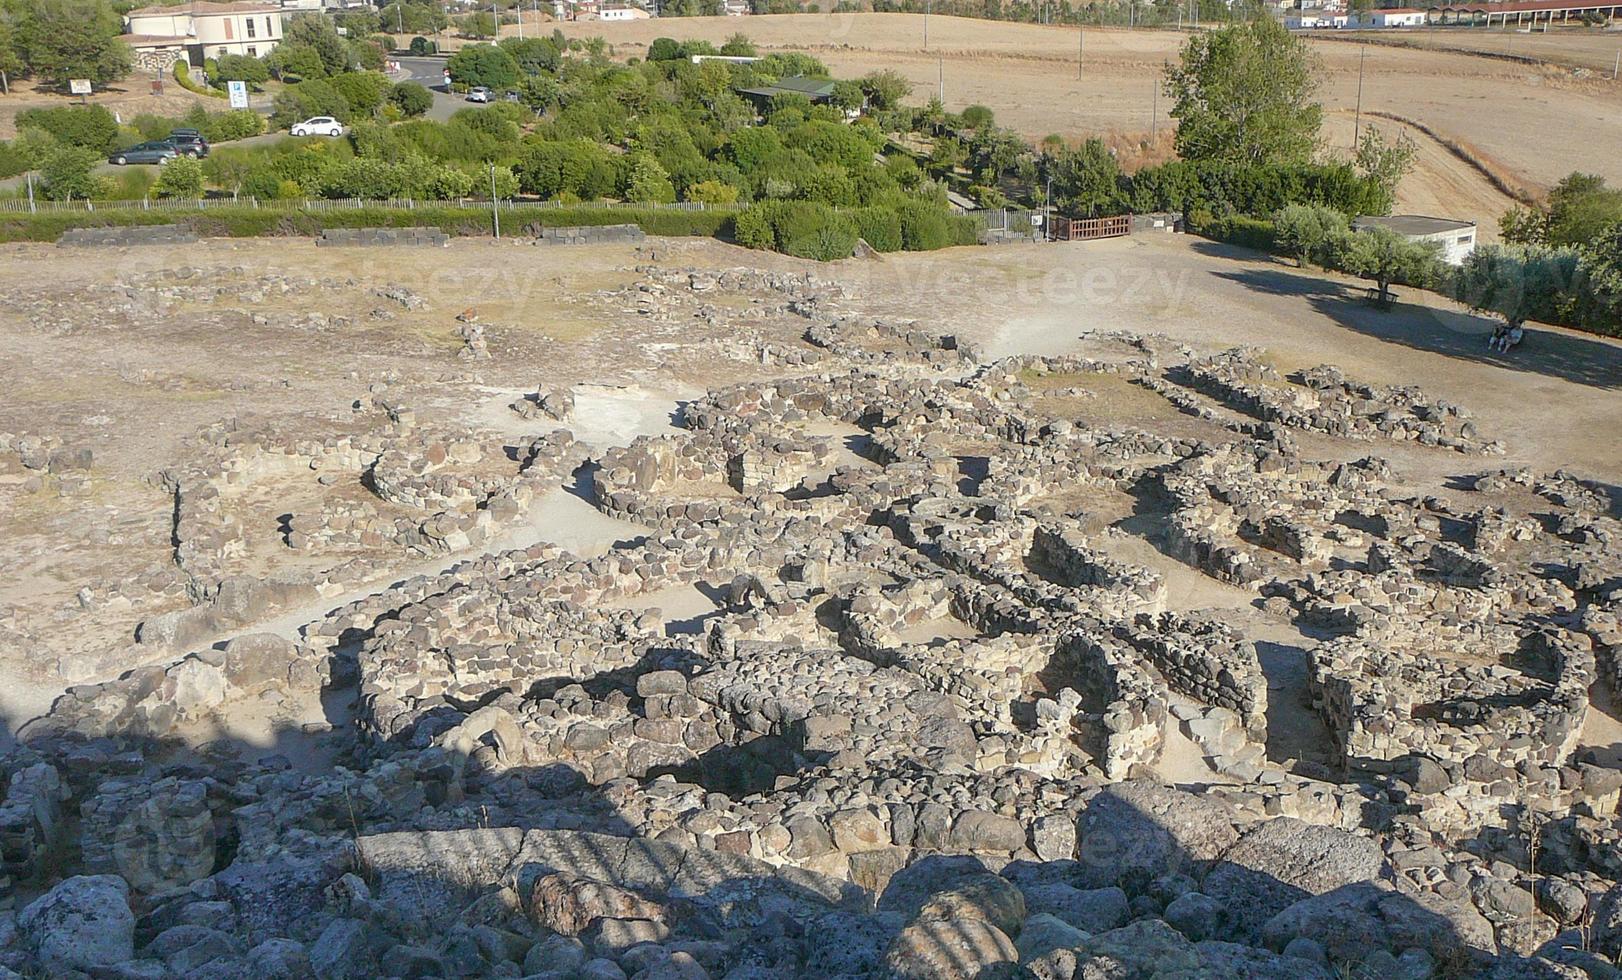 ruínas do antigo edifício megalítico sunuxi nuraghe na sardenha, foto